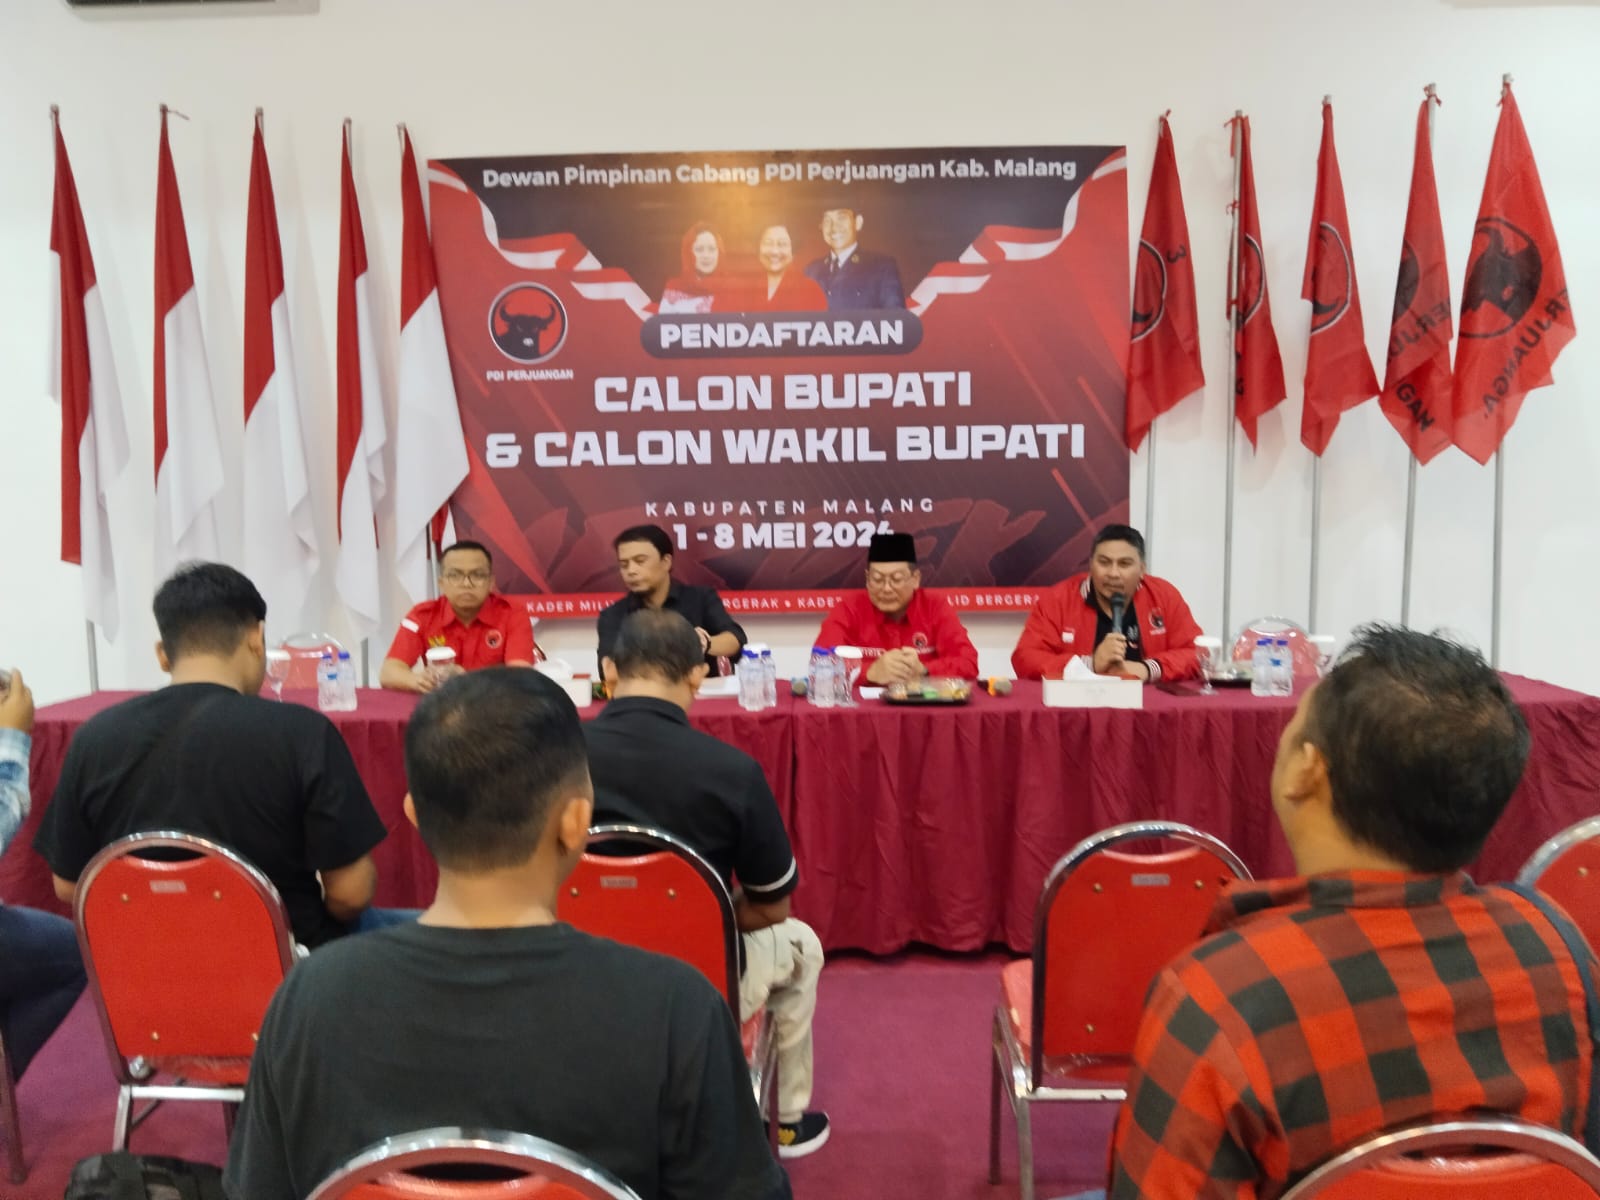 PDI Perjuangan Kabupaten Malang Buka Penjaringan Bakal Calon Bupati Wakil Bupati